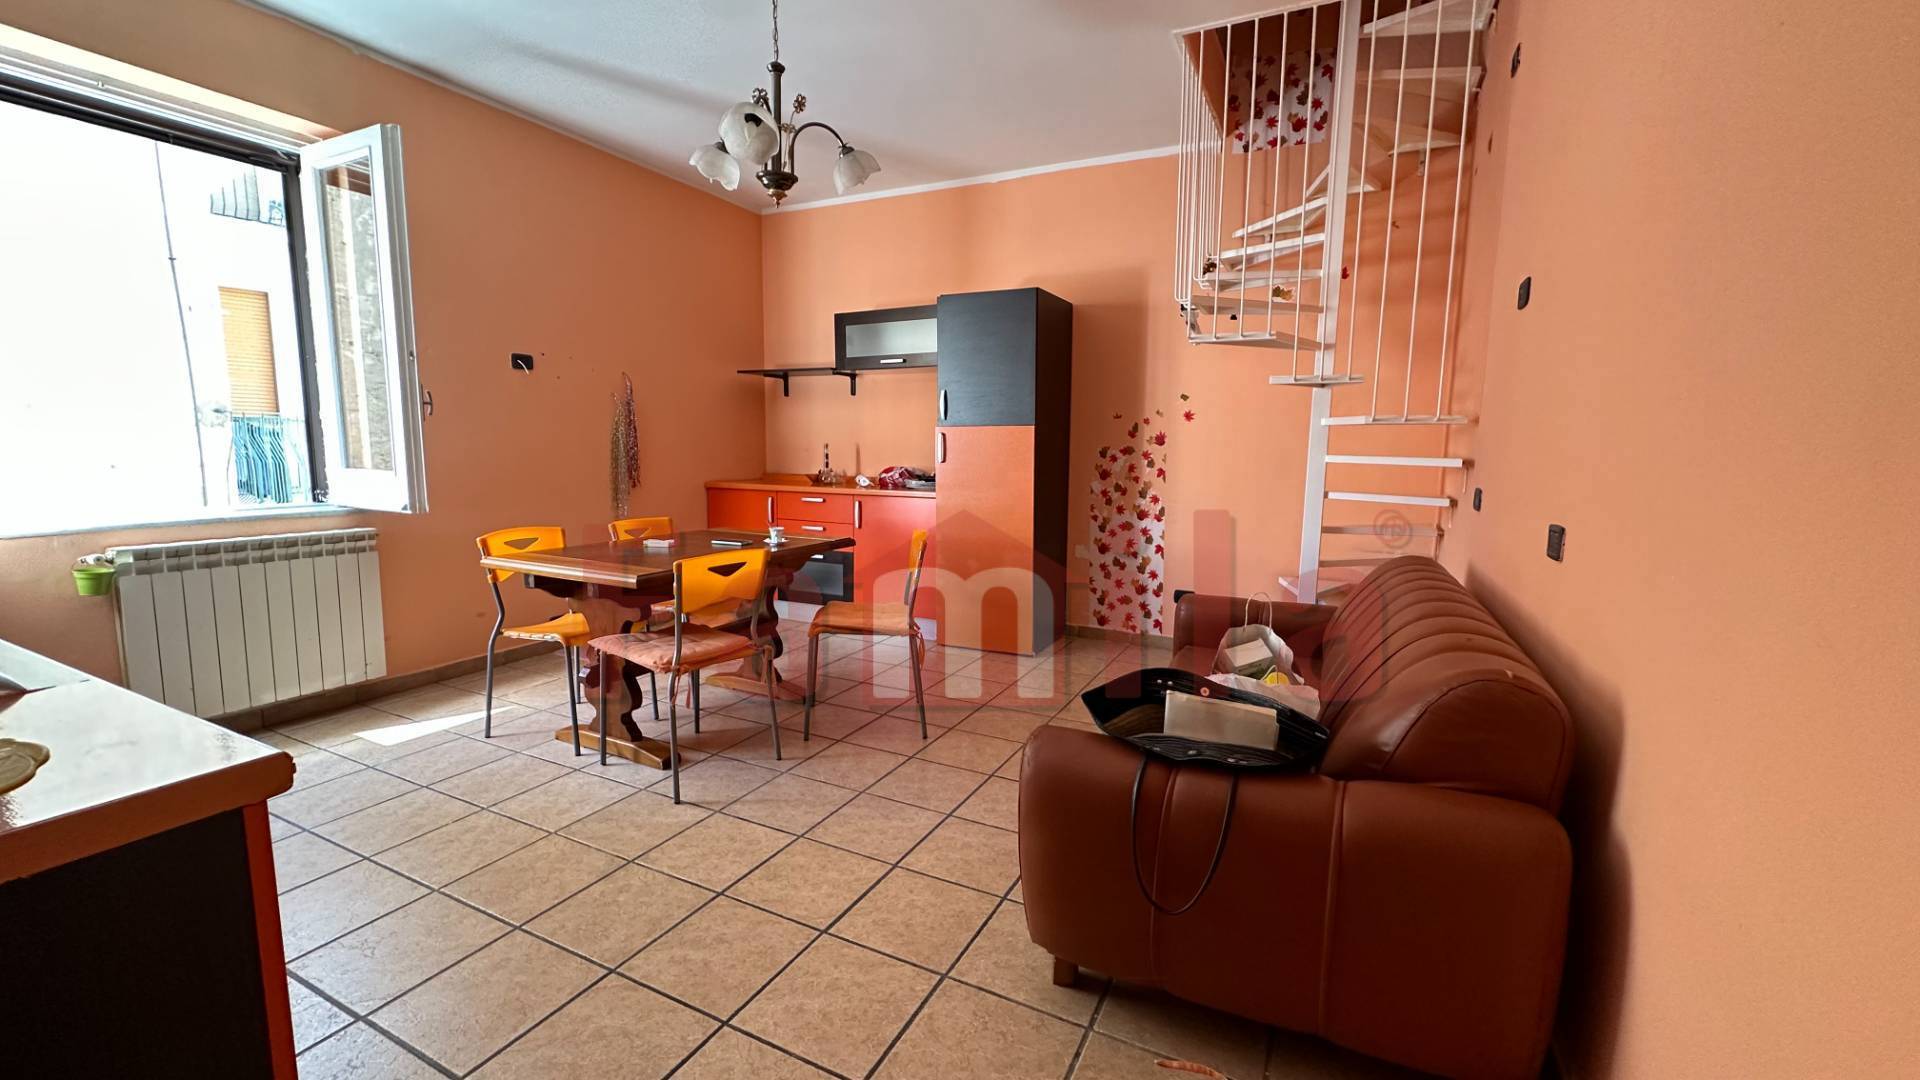 Appartamento in vendita a Mugnano del Cardinale, 2 locali, prezzo € 42.000 | PortaleAgenzieImmobiliari.it